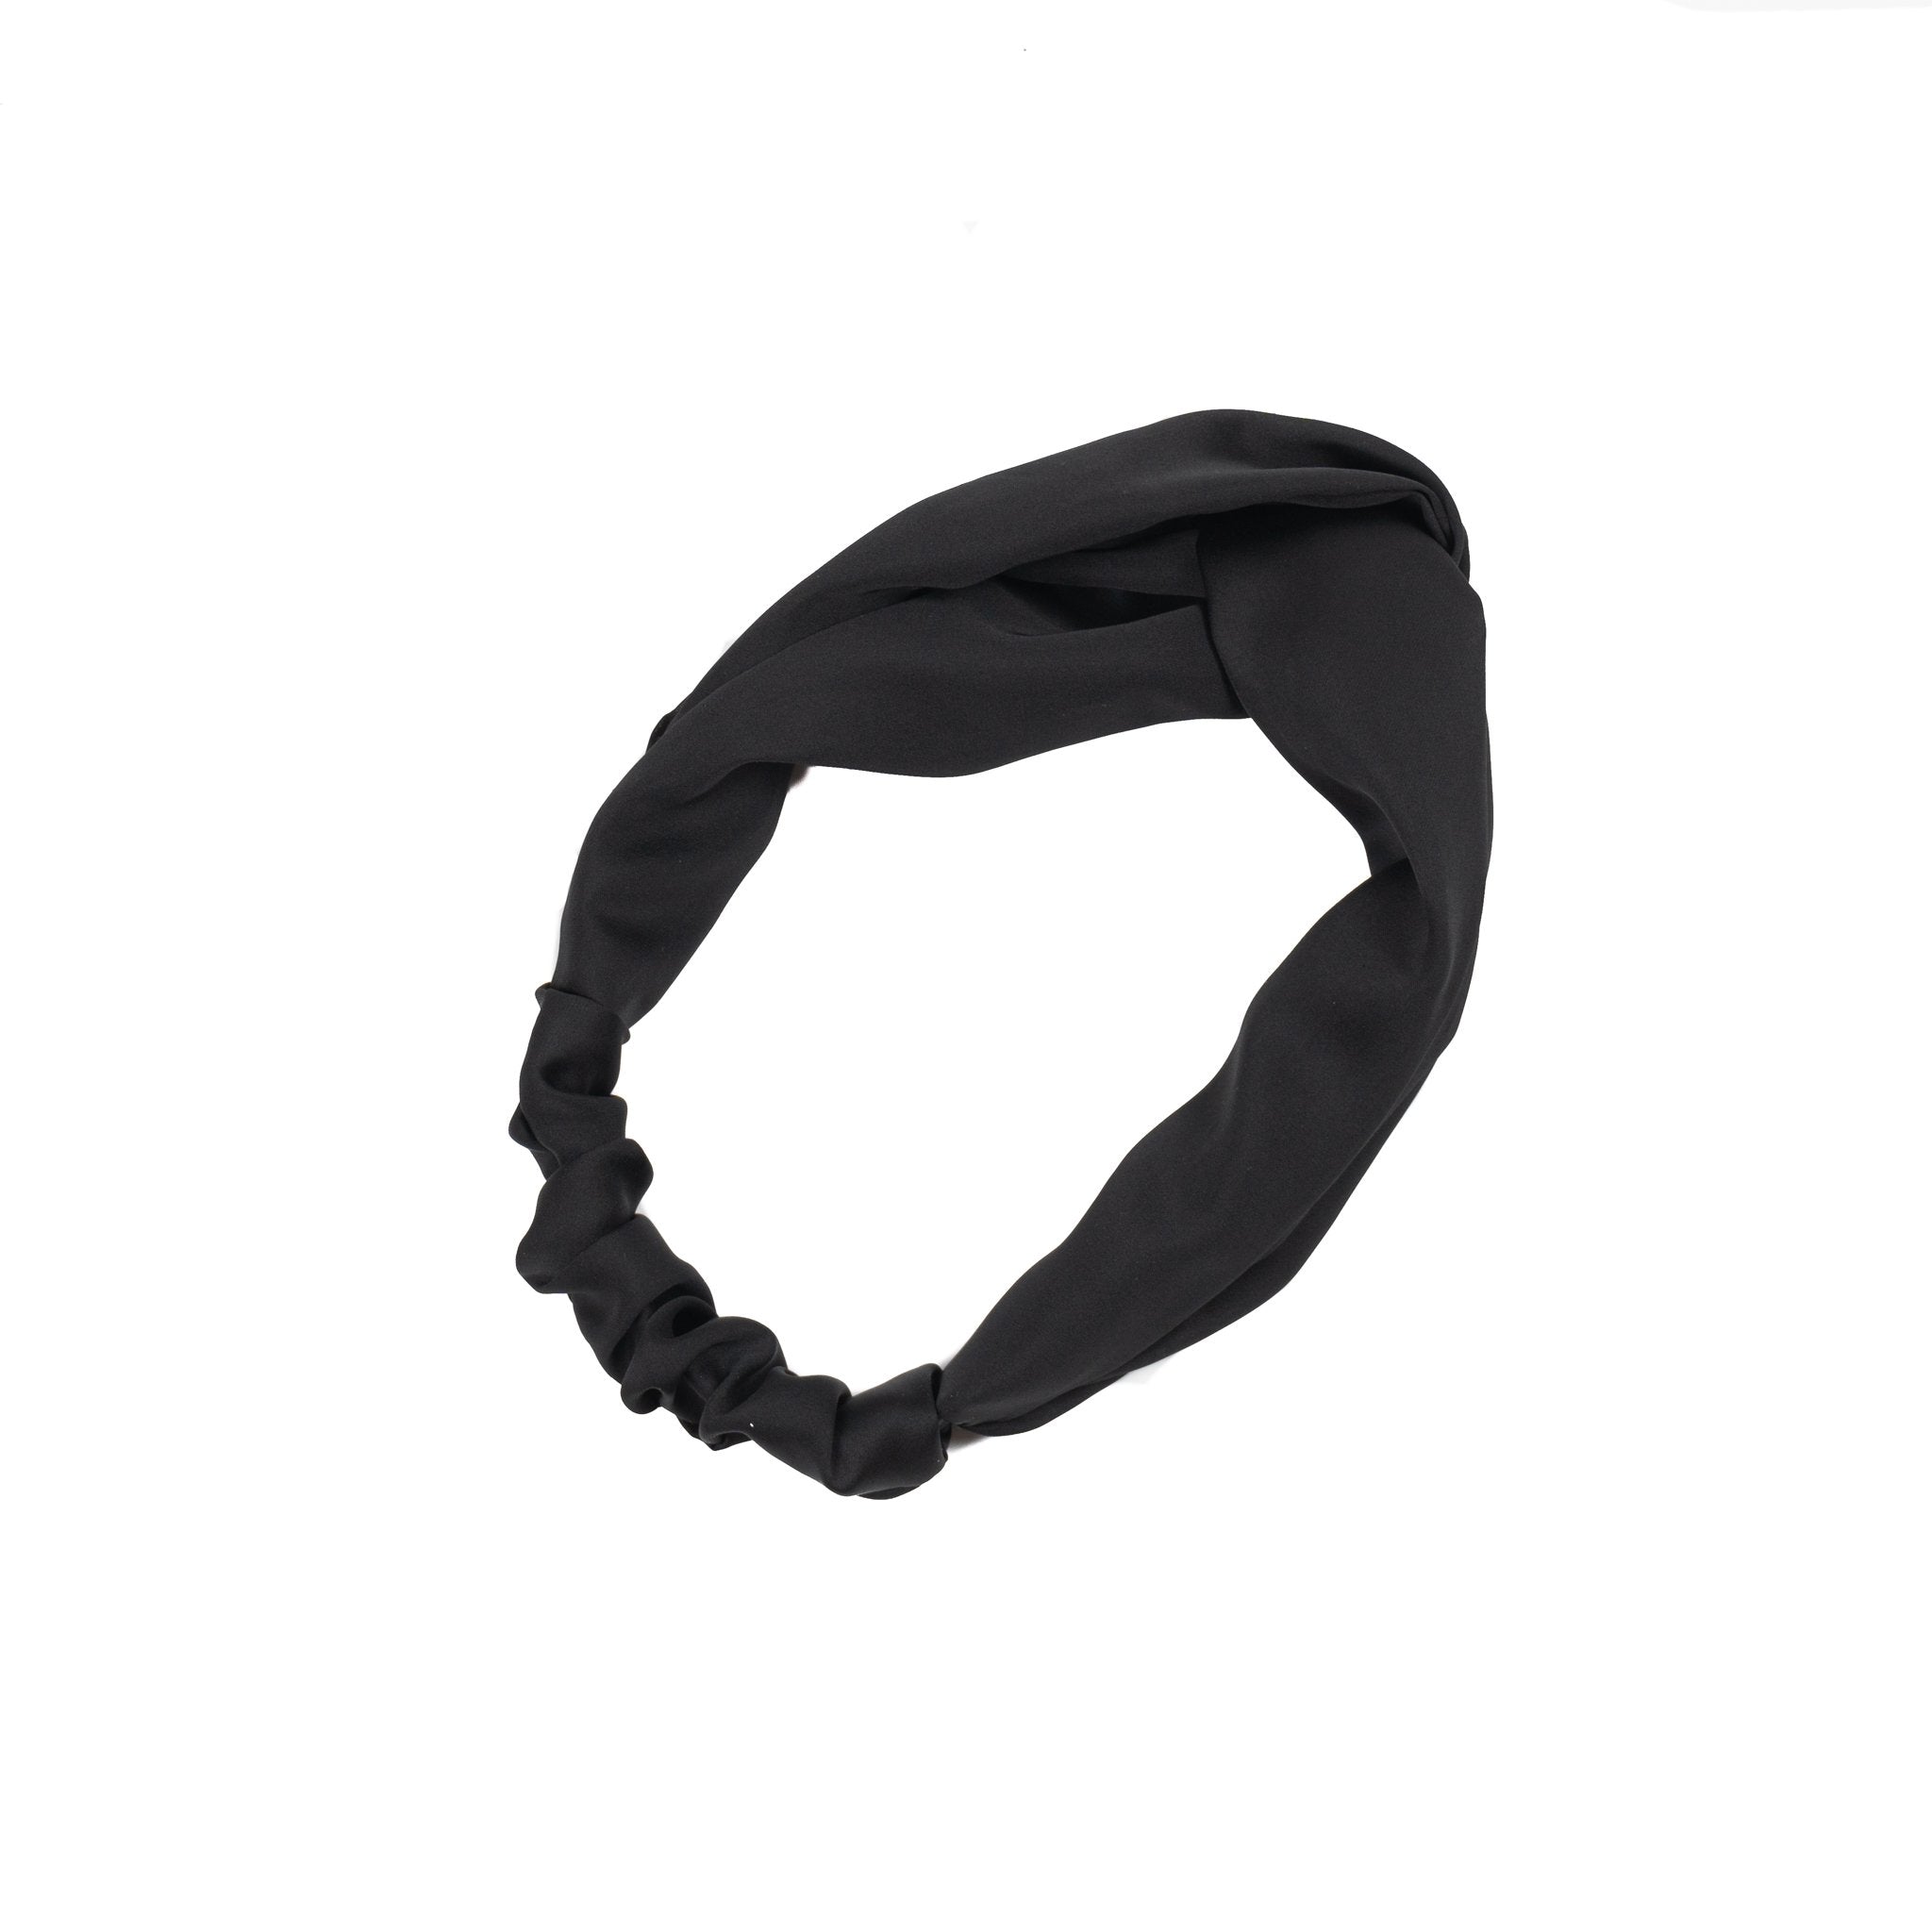 Knot Headbands - The Modernest